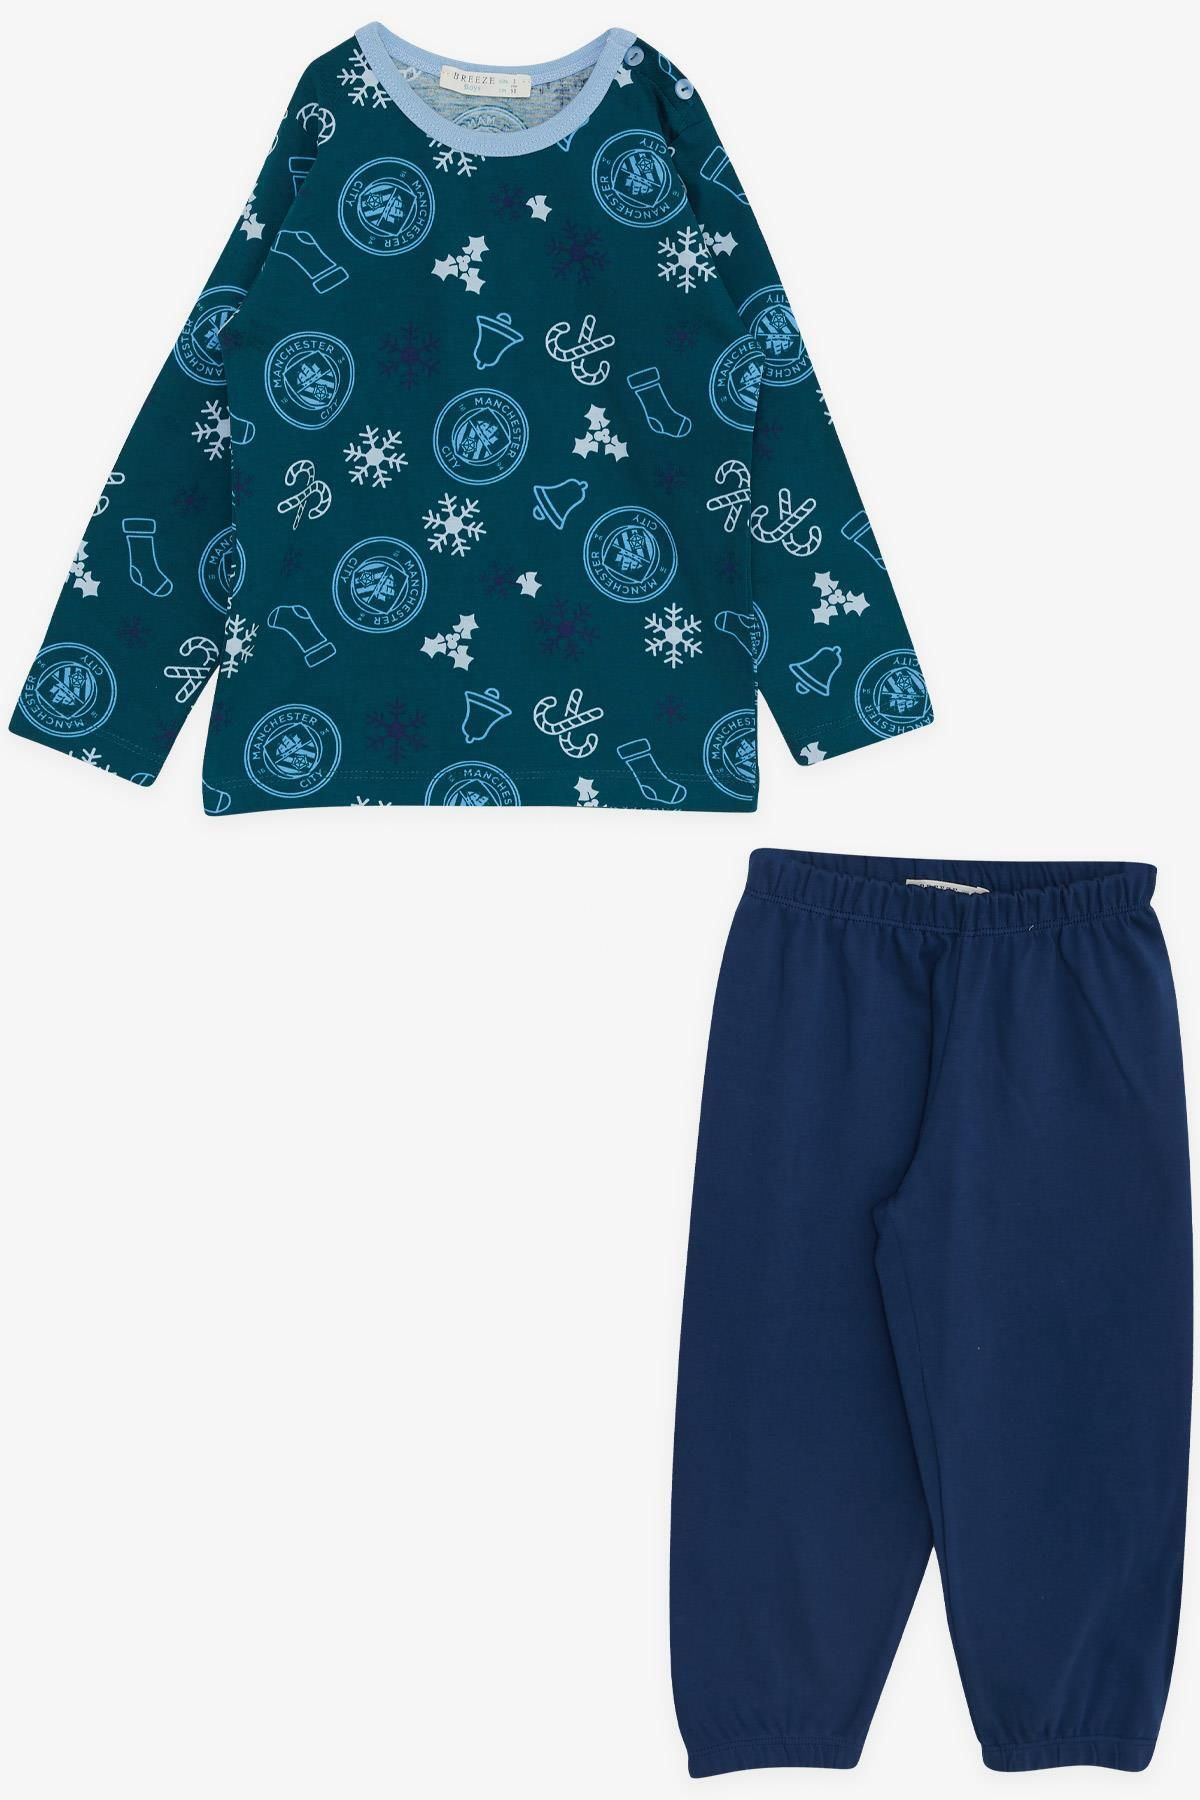 Breeze Erkek Çocuk Pijama Takımı Yılbaşı Temalı 1-4 Yaş, Petrol Yeşili